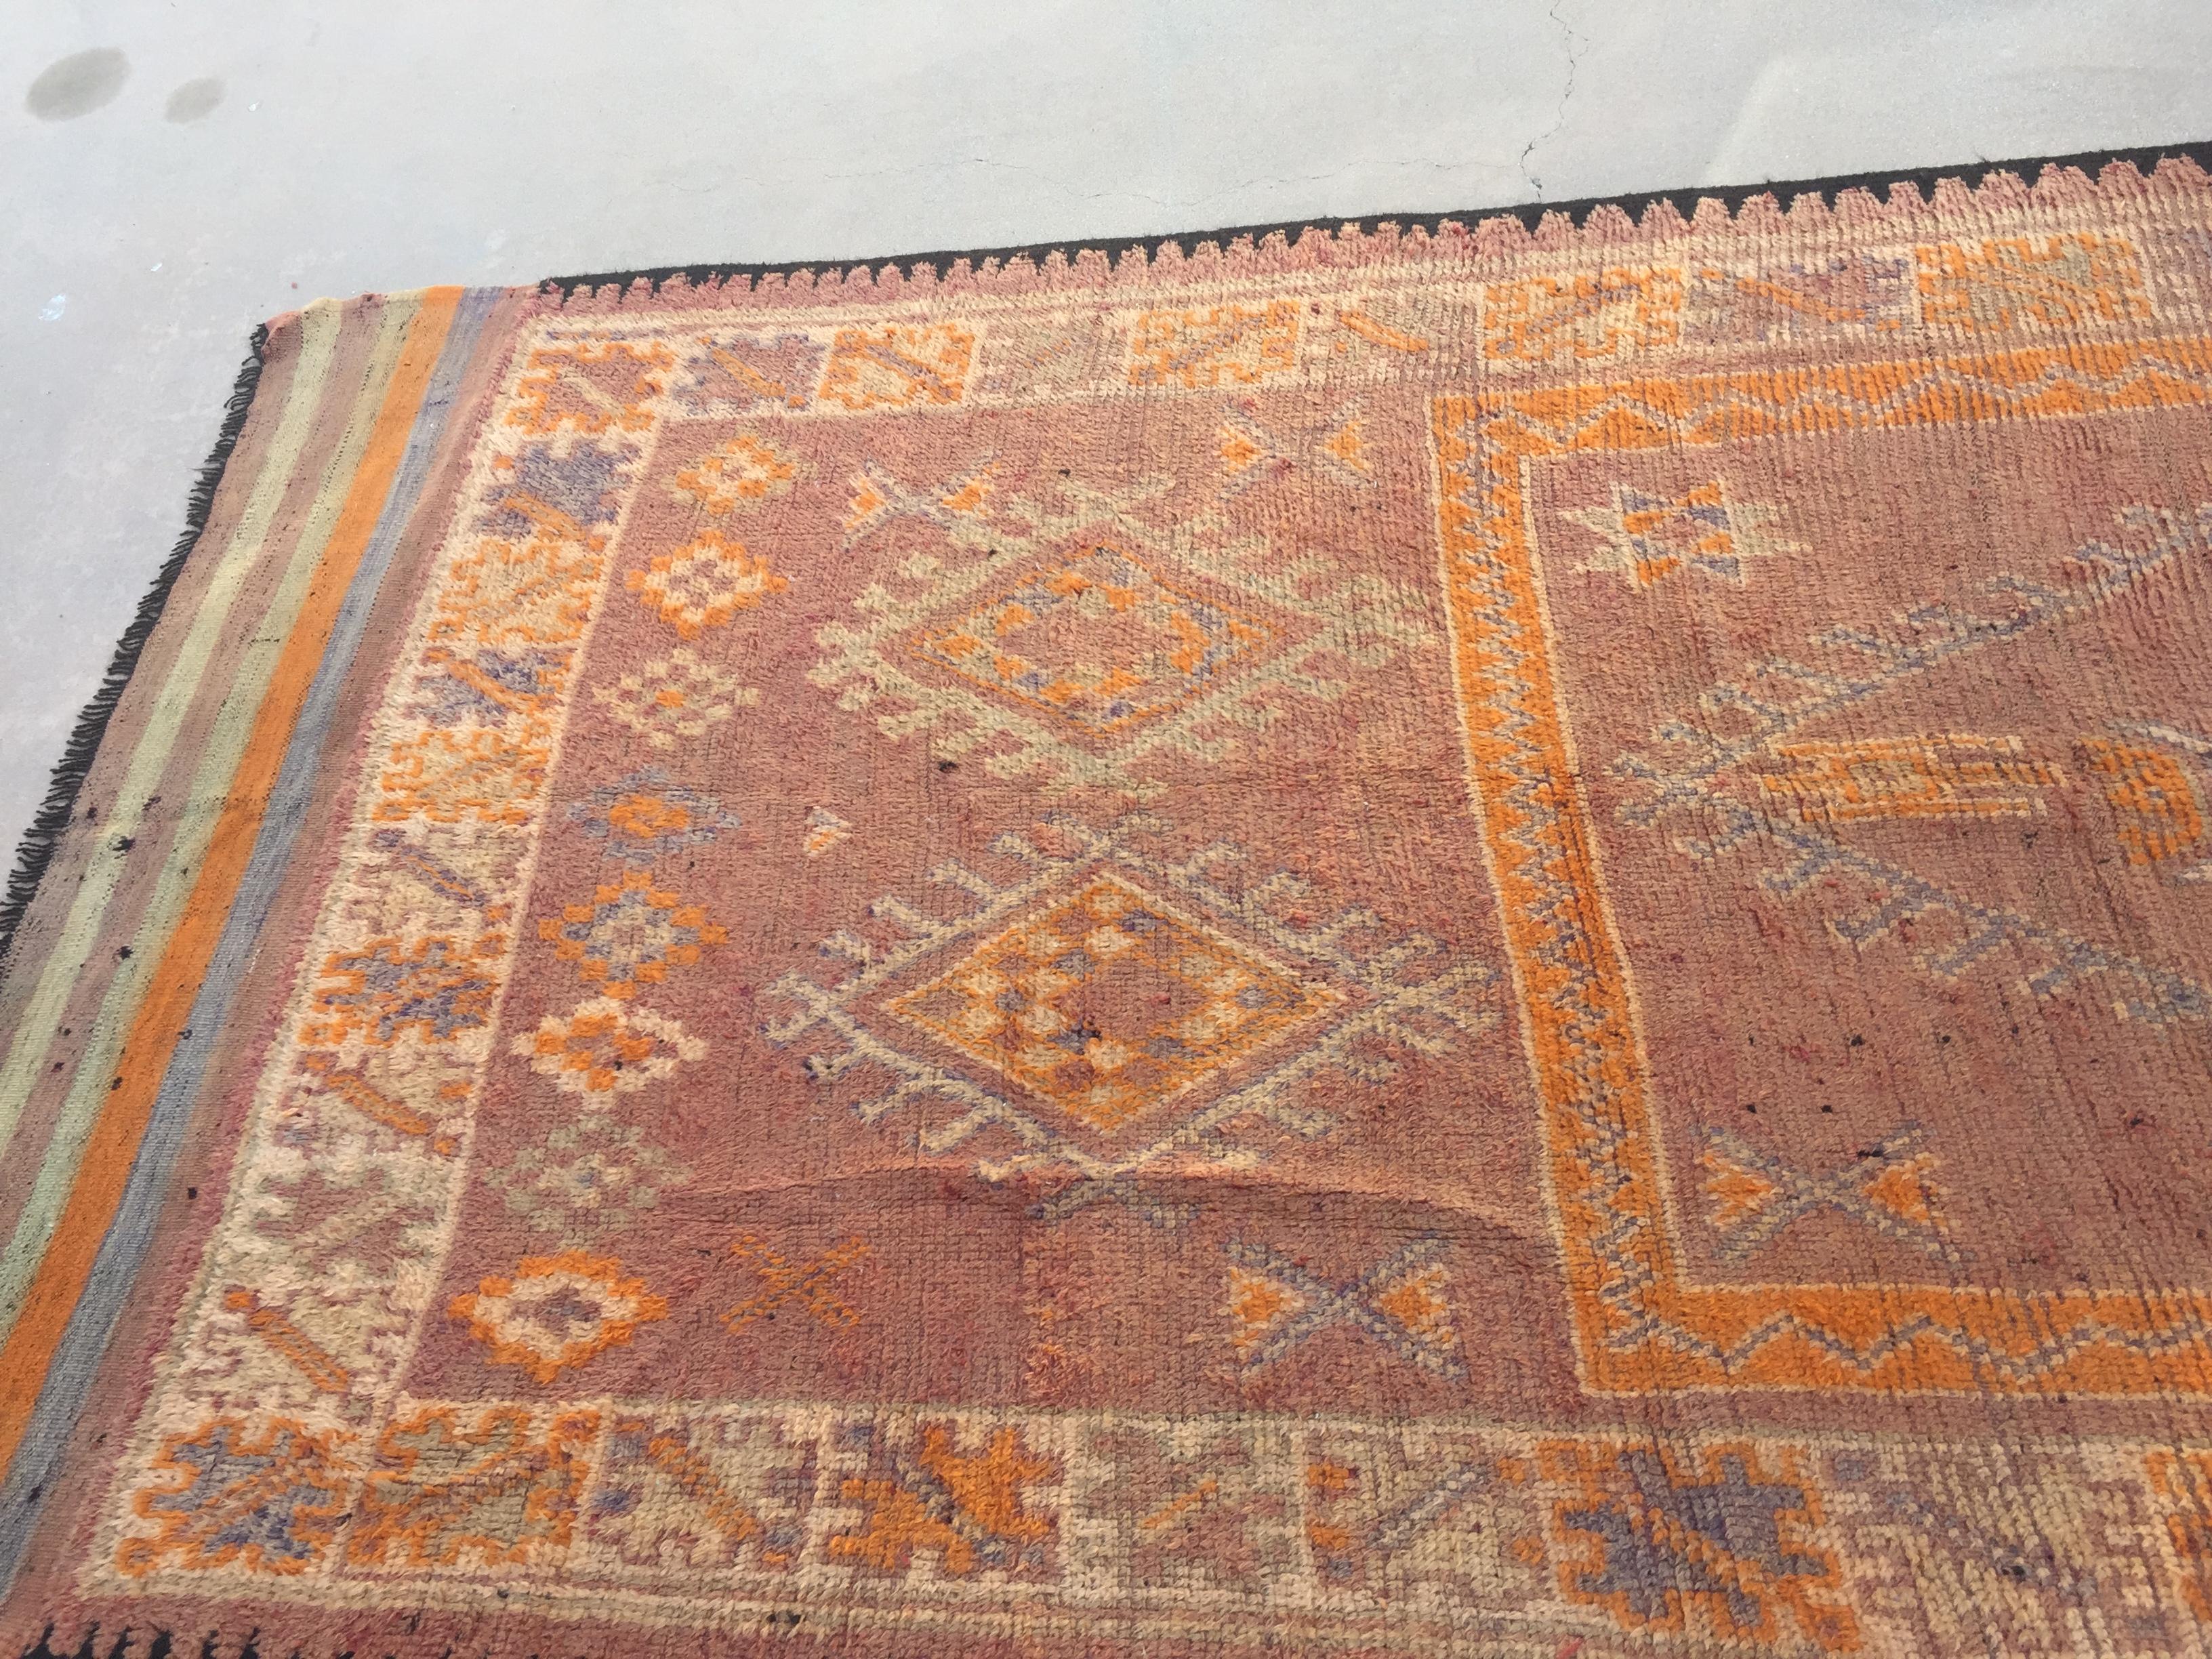 1940 Authentique tapis authentique tissé à la main en style tribal berbère marocain. Tapis marocain du milieu du siècle avec des motifs géométriques tribaux. Tissé à la main par les tribus berbères au Maroc avec des motifs géométriques tribaux